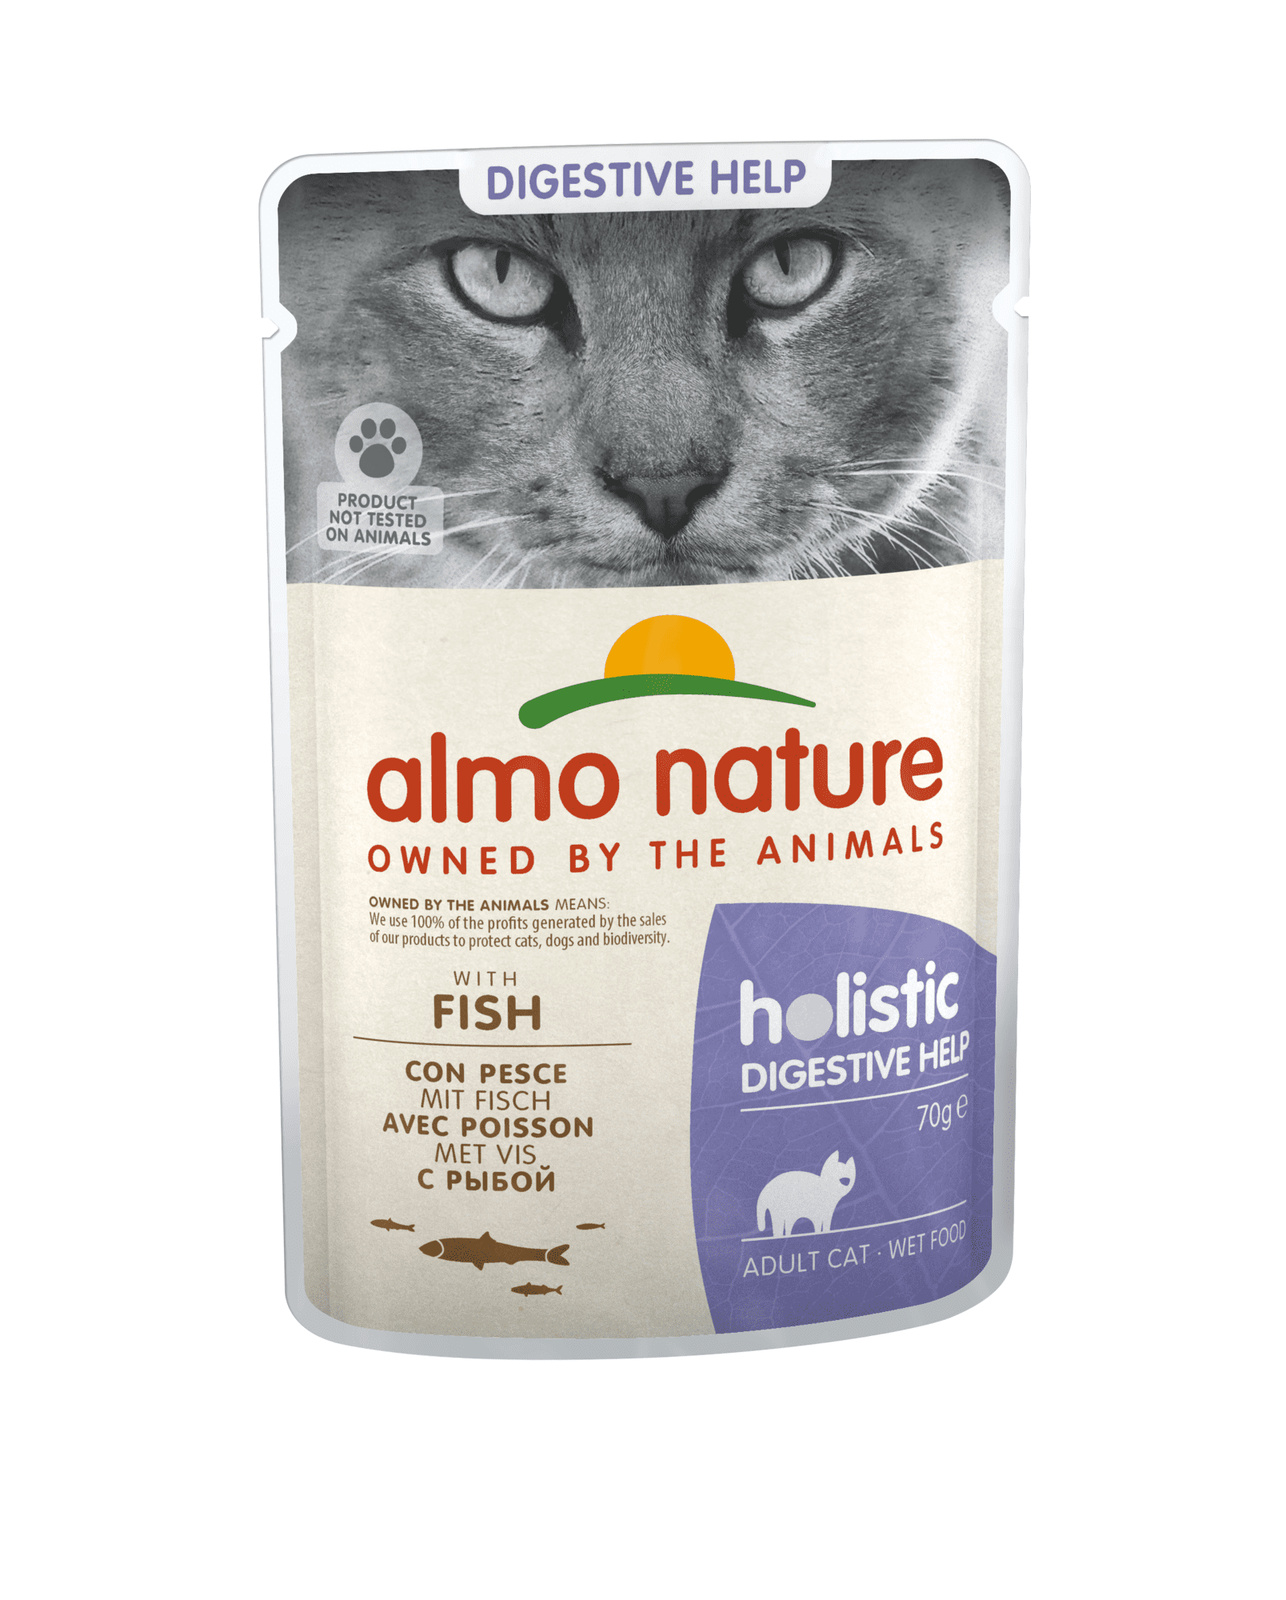 Almo Nature (консервы) паучи с рыбой для кошек для улучшения работы кишечника (70 г) Almo Nature (консервы) Almo Nature (консервы) паучи с рыбой для кошек для улучшения работы кишечника (70 г) - фото 1